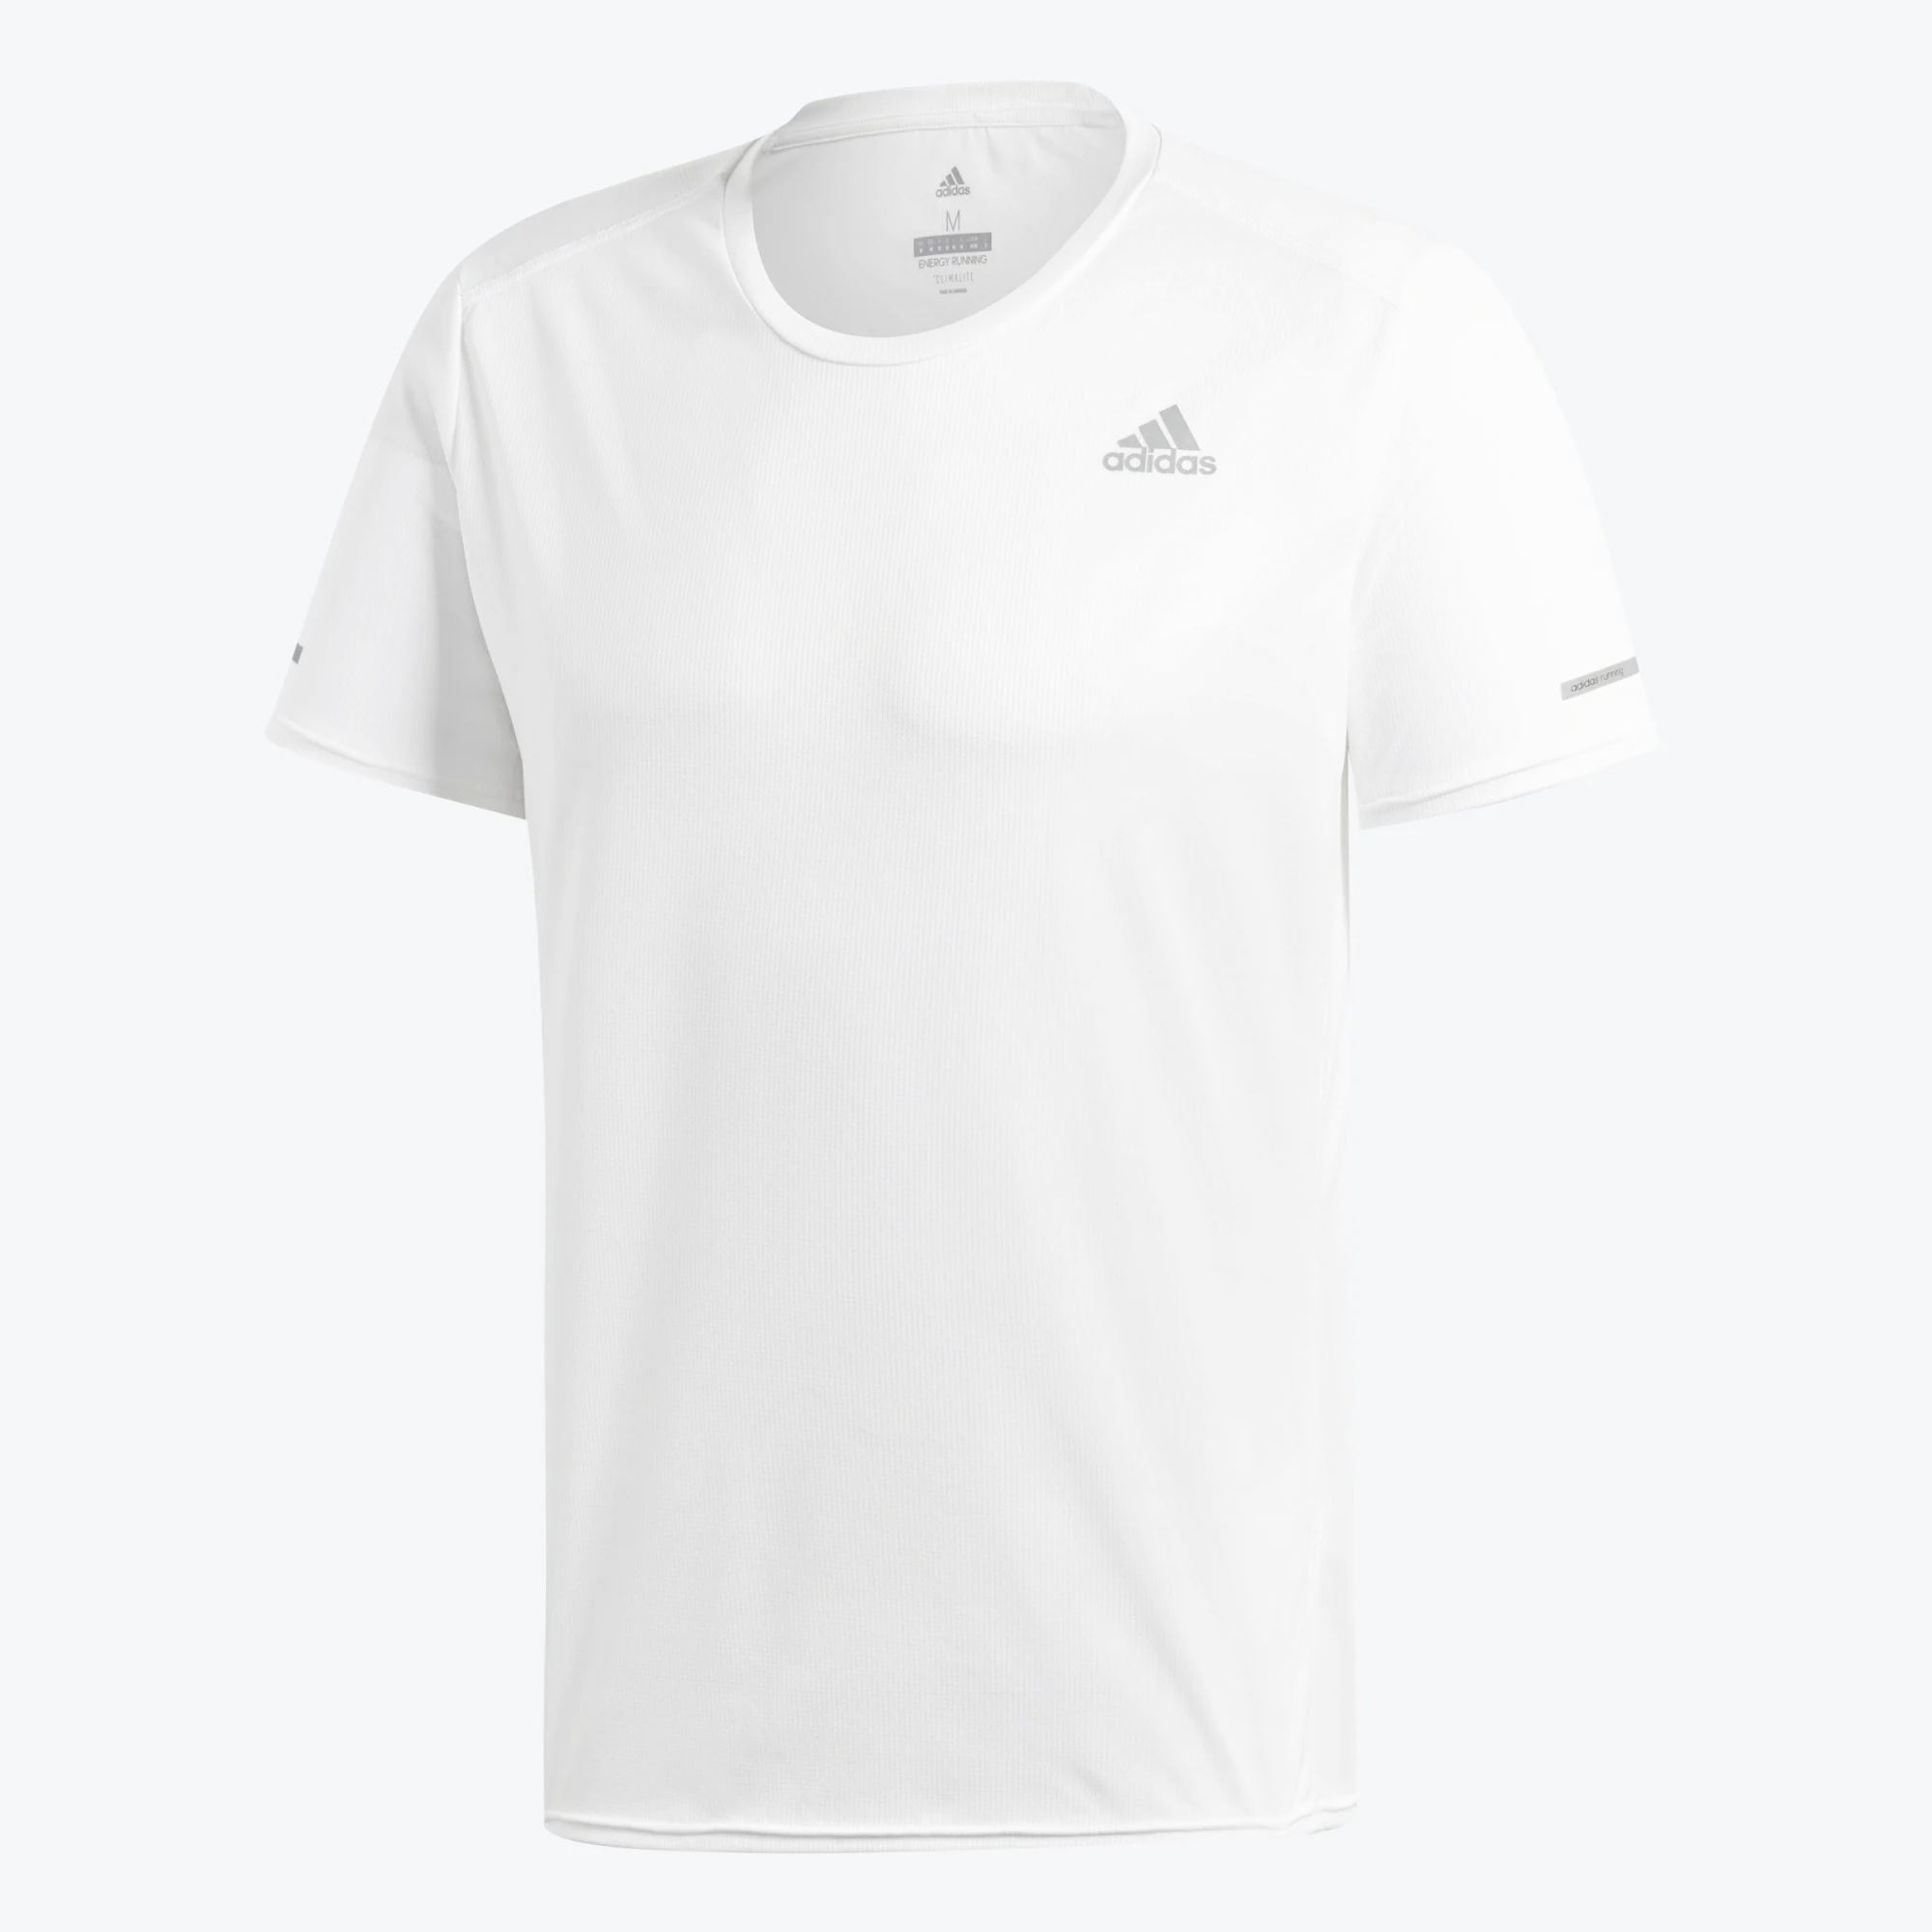 Áo thể thao nam Adidas Running Tee White